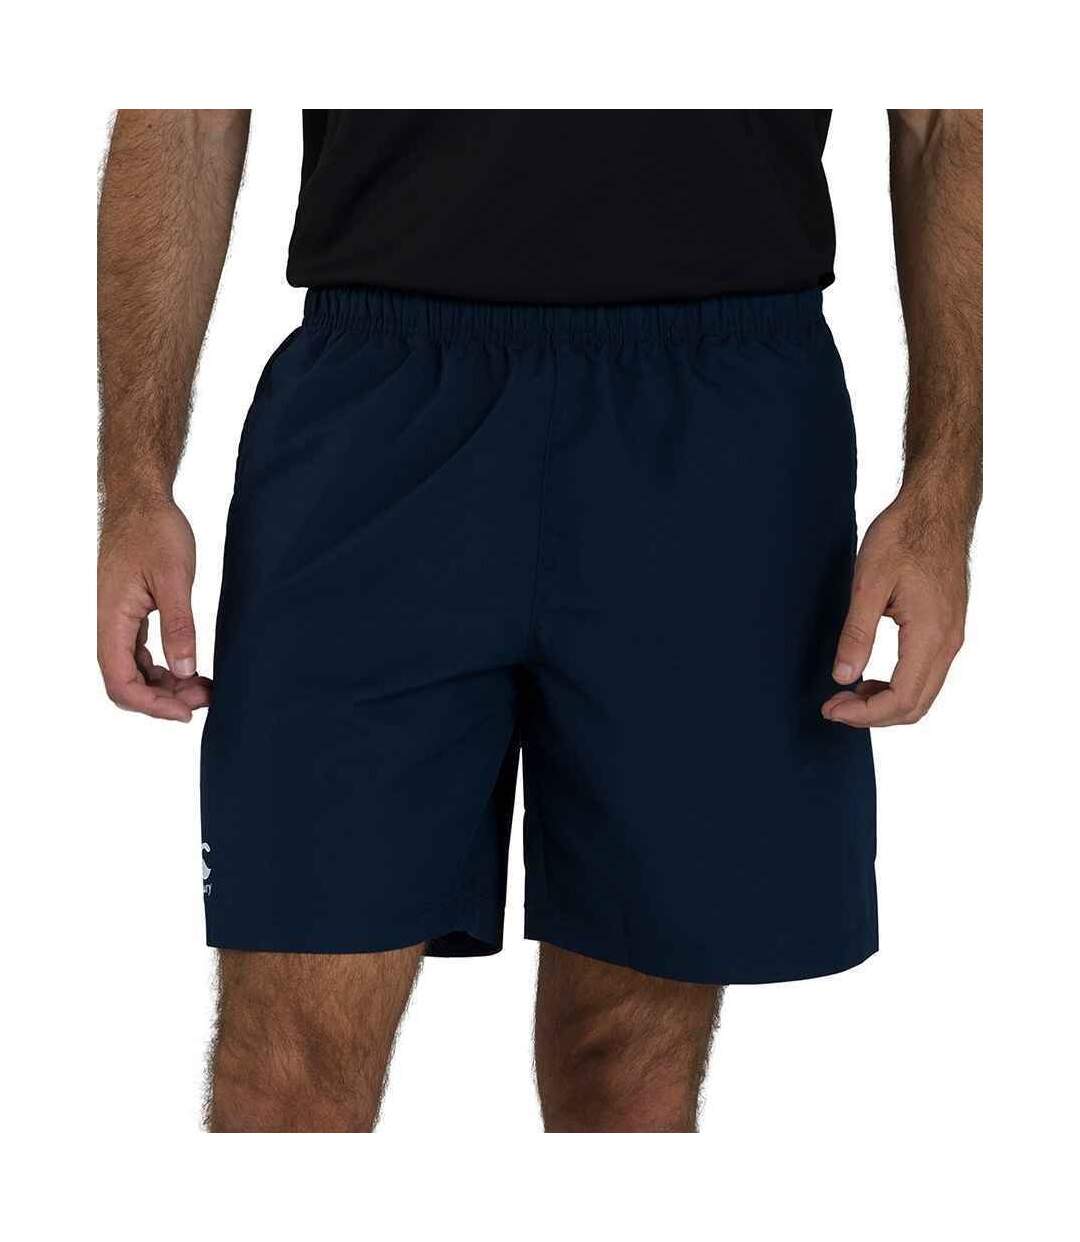 Canterbury Mens Club Shorts (White) - UTPC4373